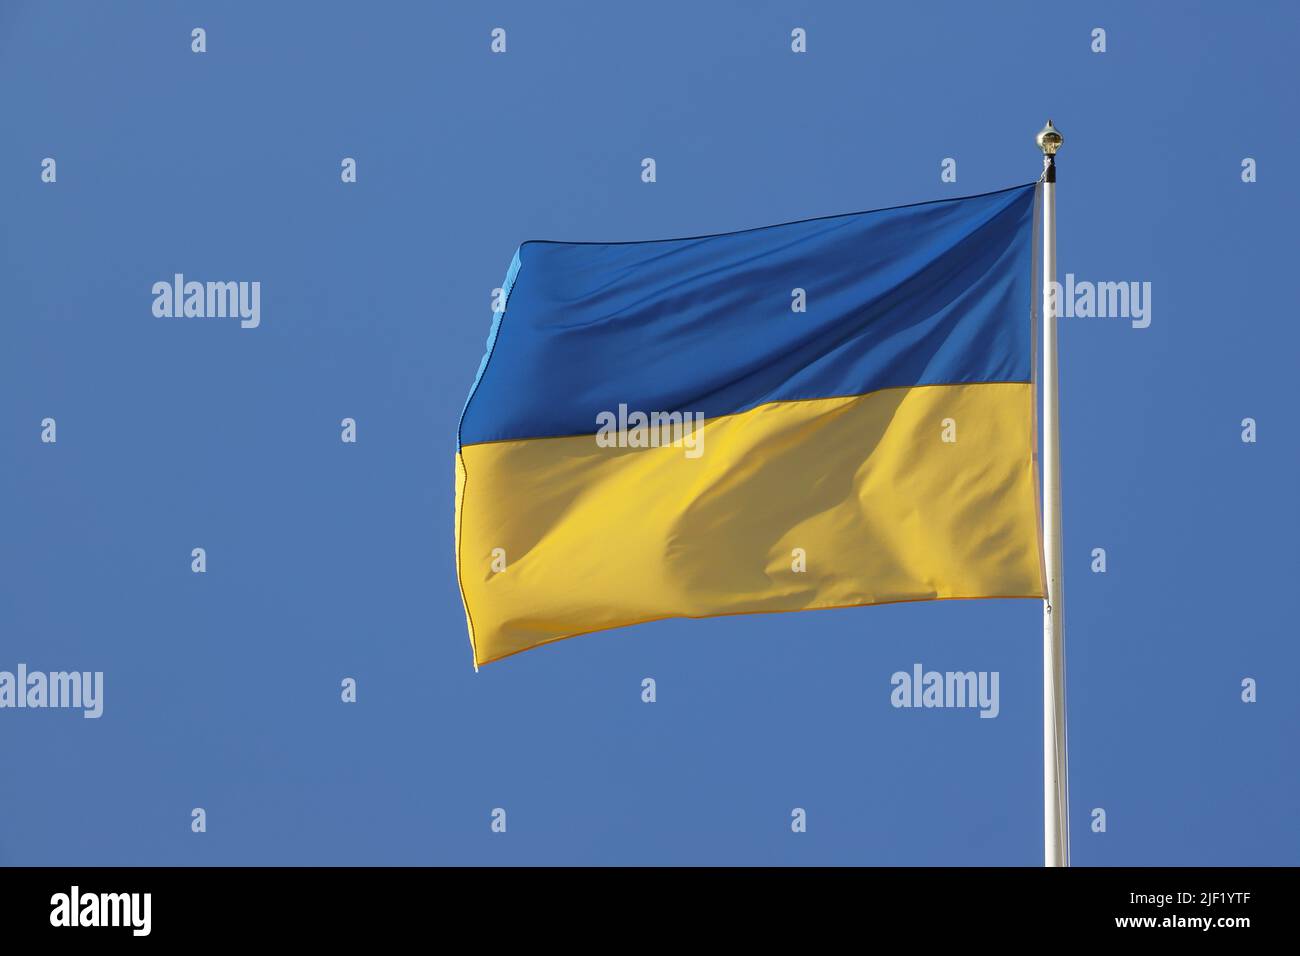 Vista de cerca de la bandera nacional de Ucrania contra un cielo azul claro. Foto de stock